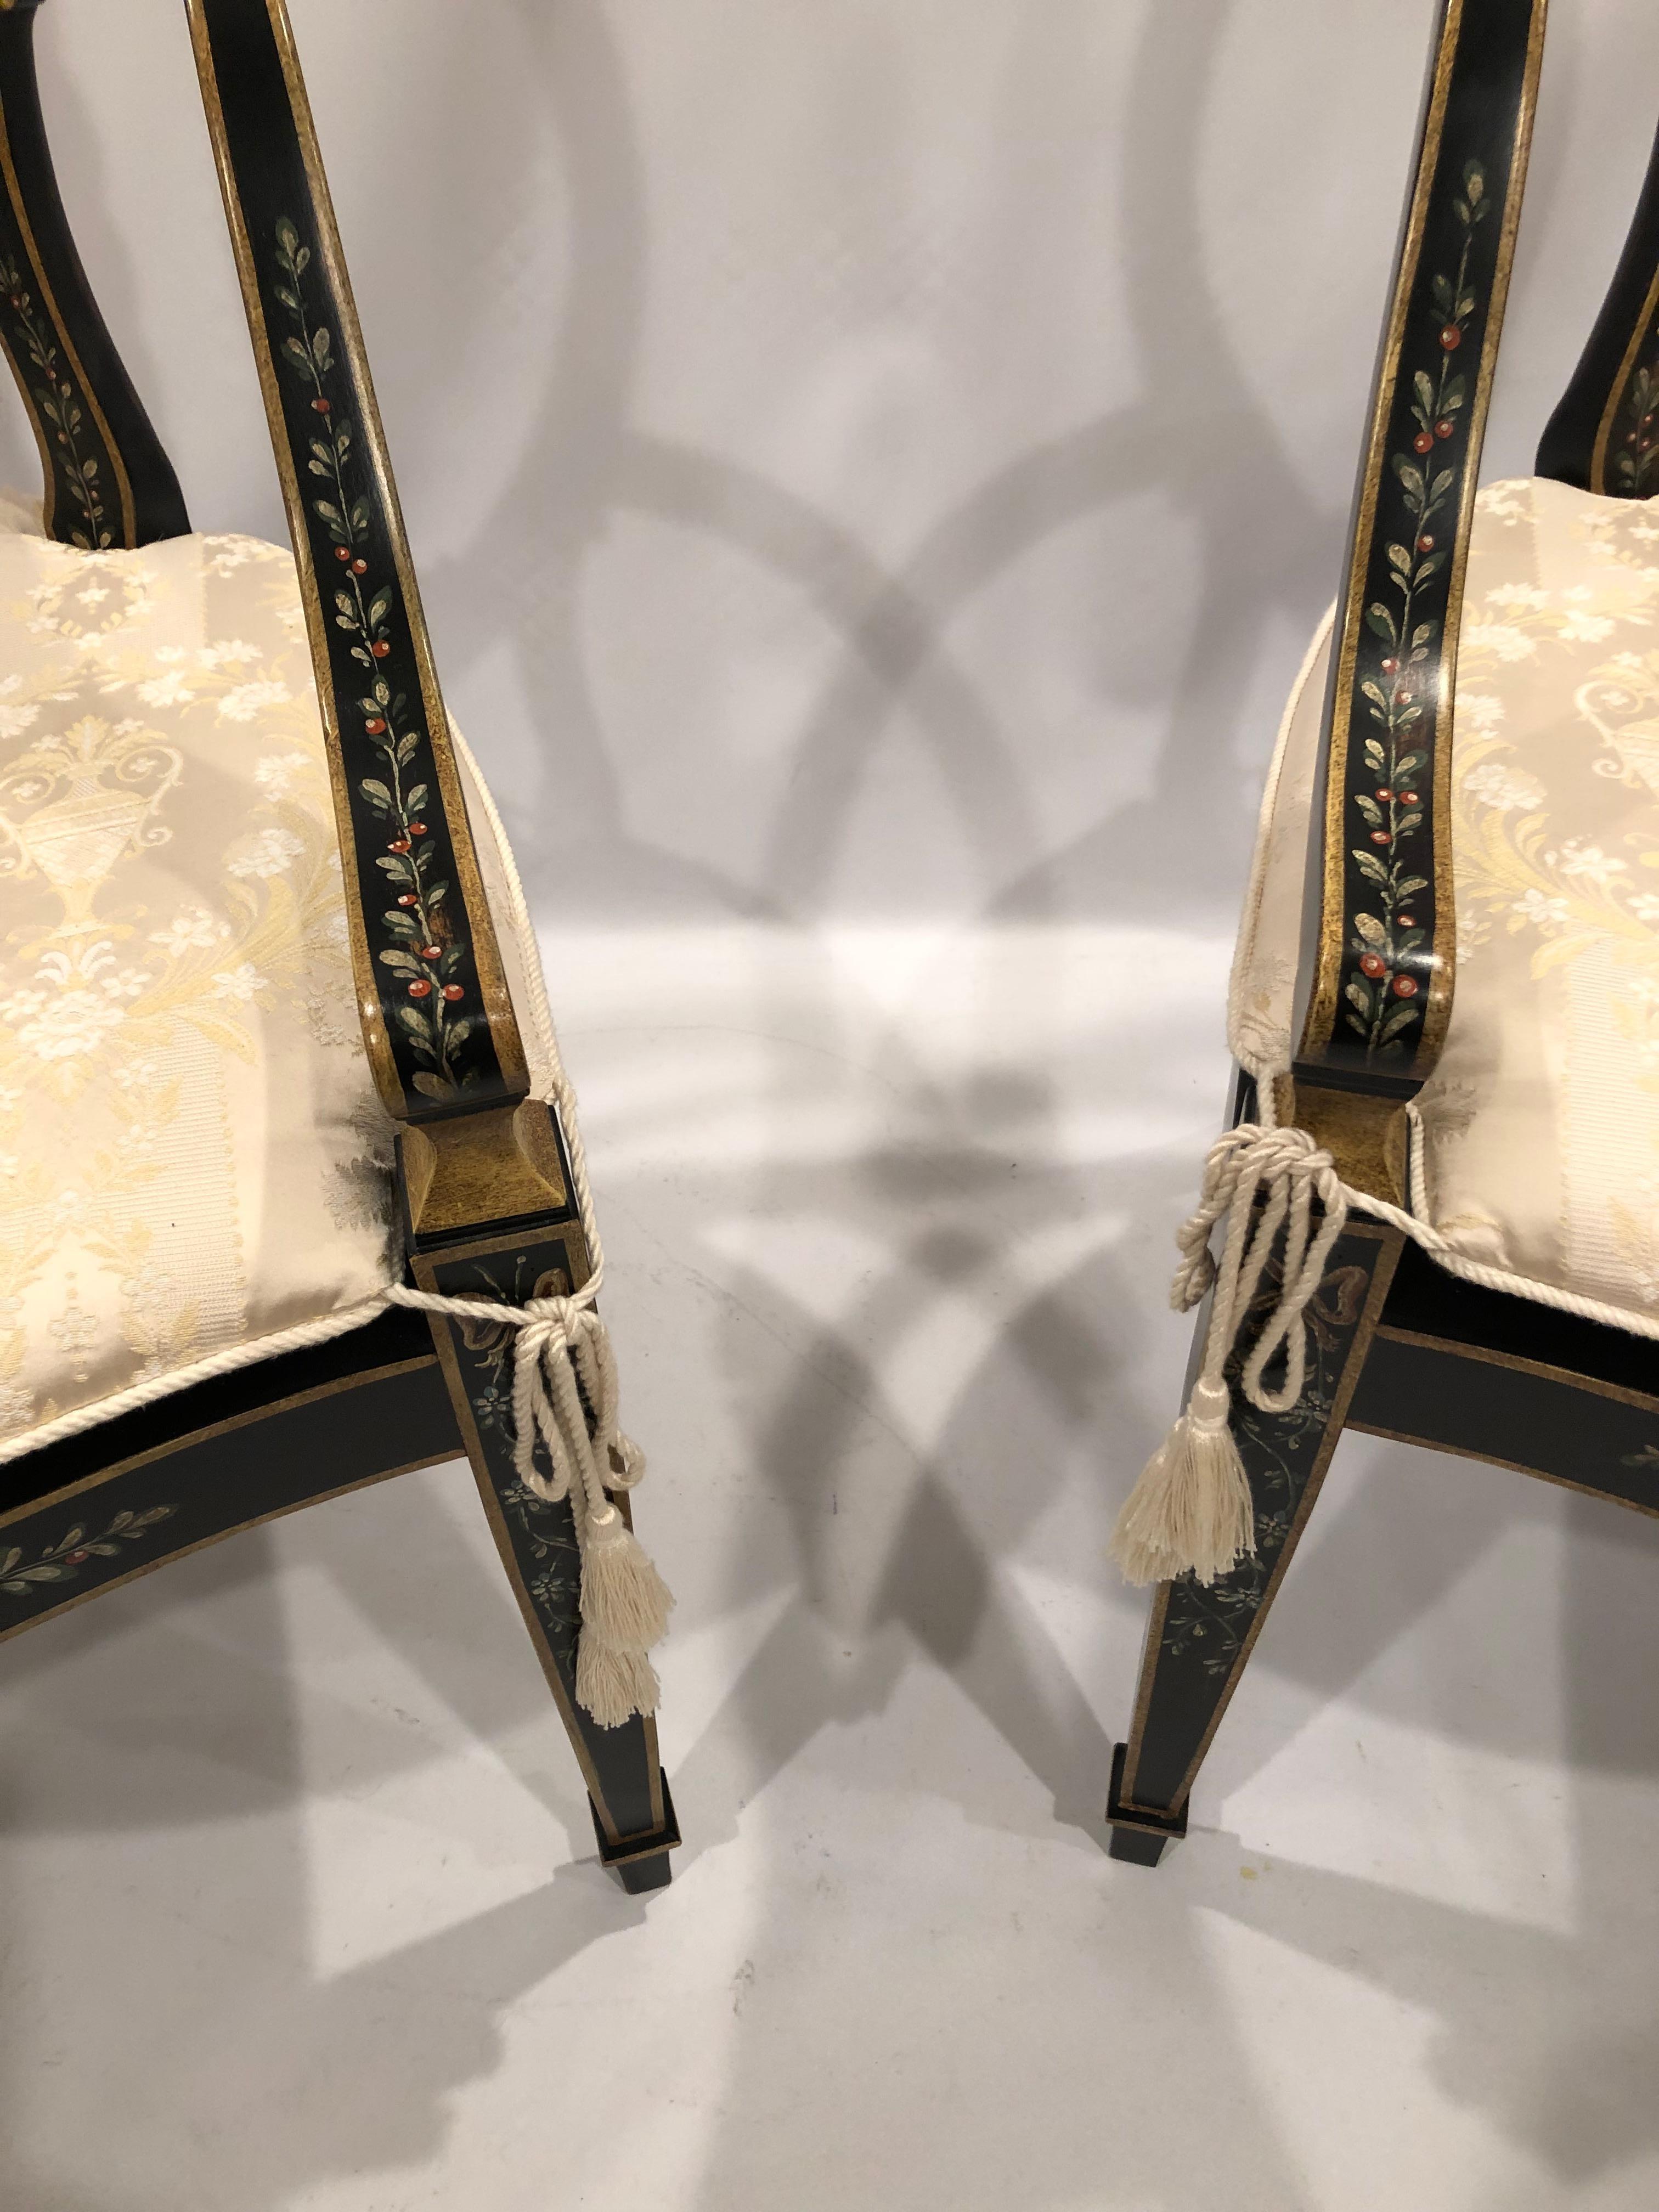 Jolie paire d'élégants fauteuils en bois de style Adams peints à la main, avec un fond noir et des détails dorés et une décoration de baies rouges et vertes.  Les sièges sont cannés avec des coussins personnalisés de couleur blanc cassé.
hauteur des